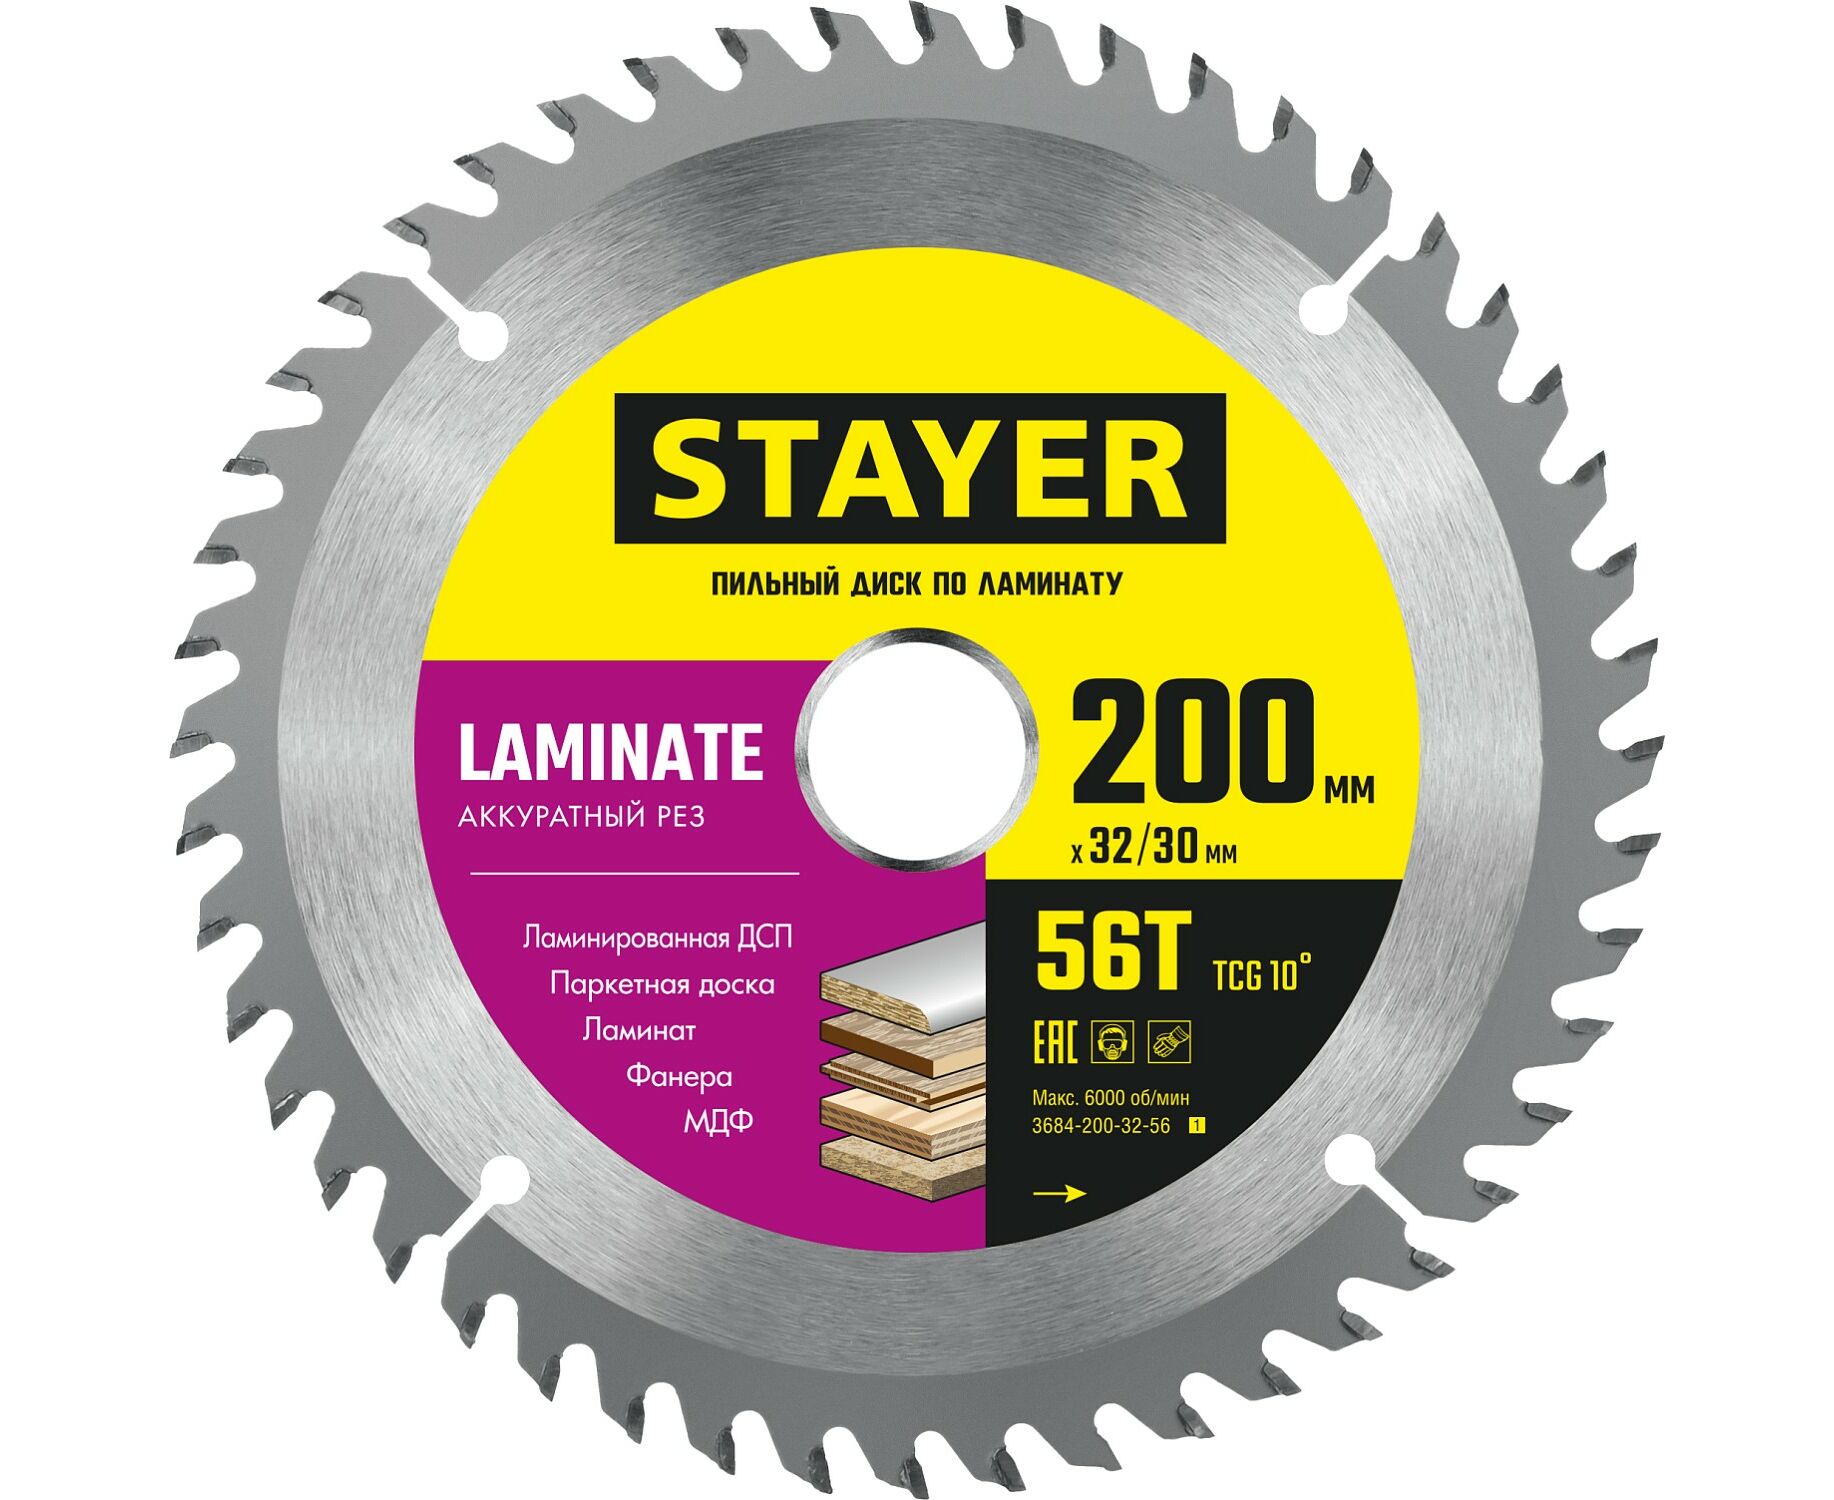 пильный диск stayer laminate 210 x 32 30мм 56т по ламинату аккуратный рез Пильный диск STAYER LAMINATE 200 x 32/30мм 56T, по ламинату, аккуратный рез